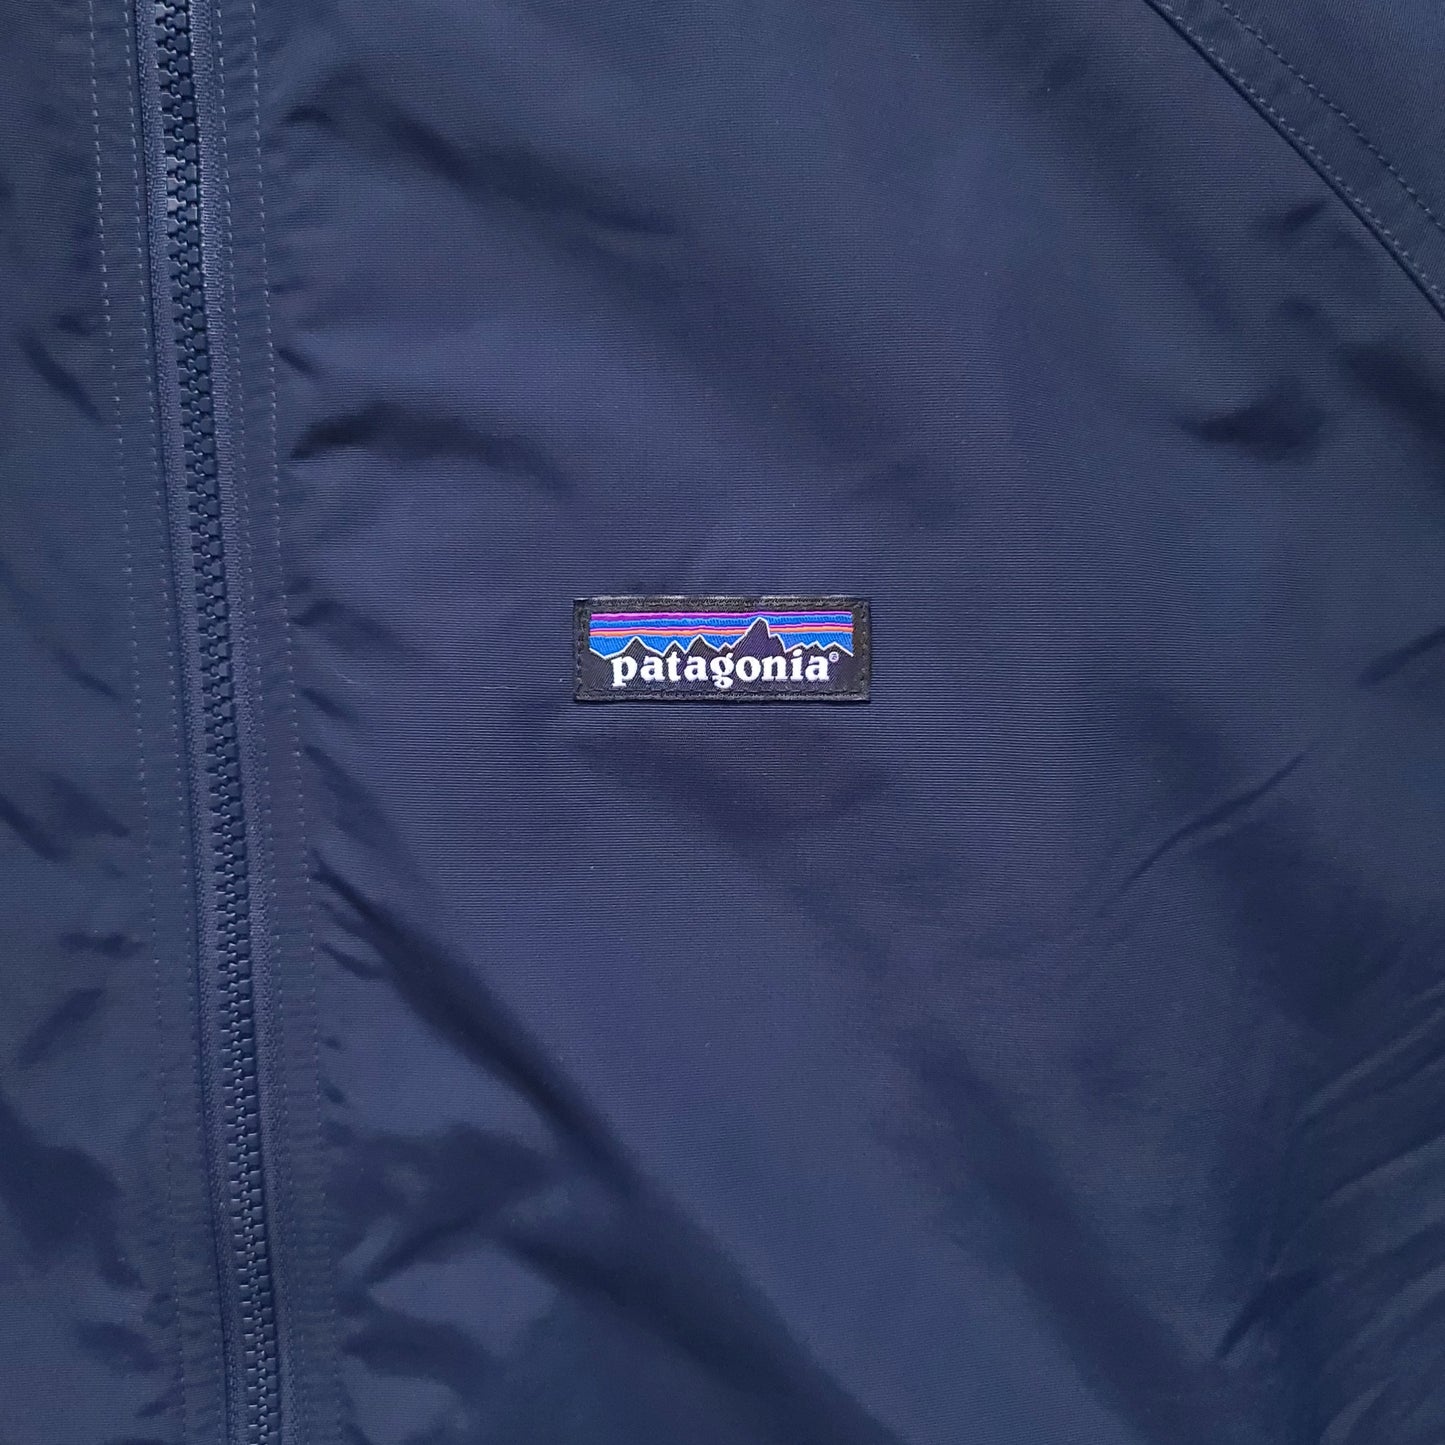 Patagonia Navy Blue Shelled Synchilla Nylon Jacket